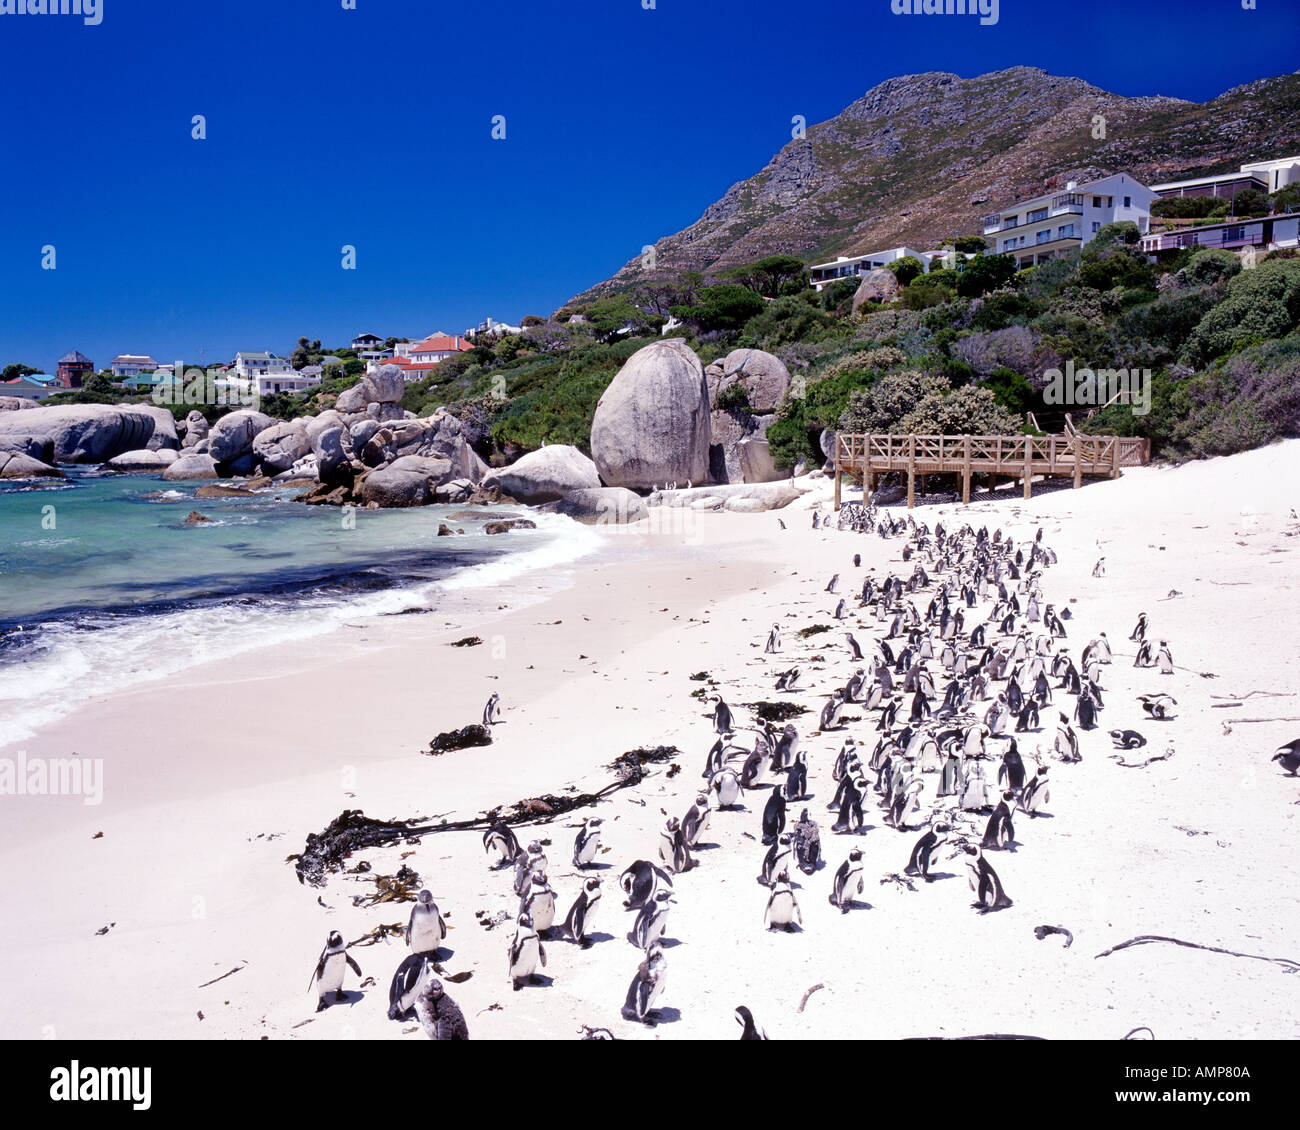 Jackass Pinguine (Sphenicus Demersis), auch bekannt als afrikanische Pinguine am Boulders Beach in Kapstadt Südafrika. Stockfoto